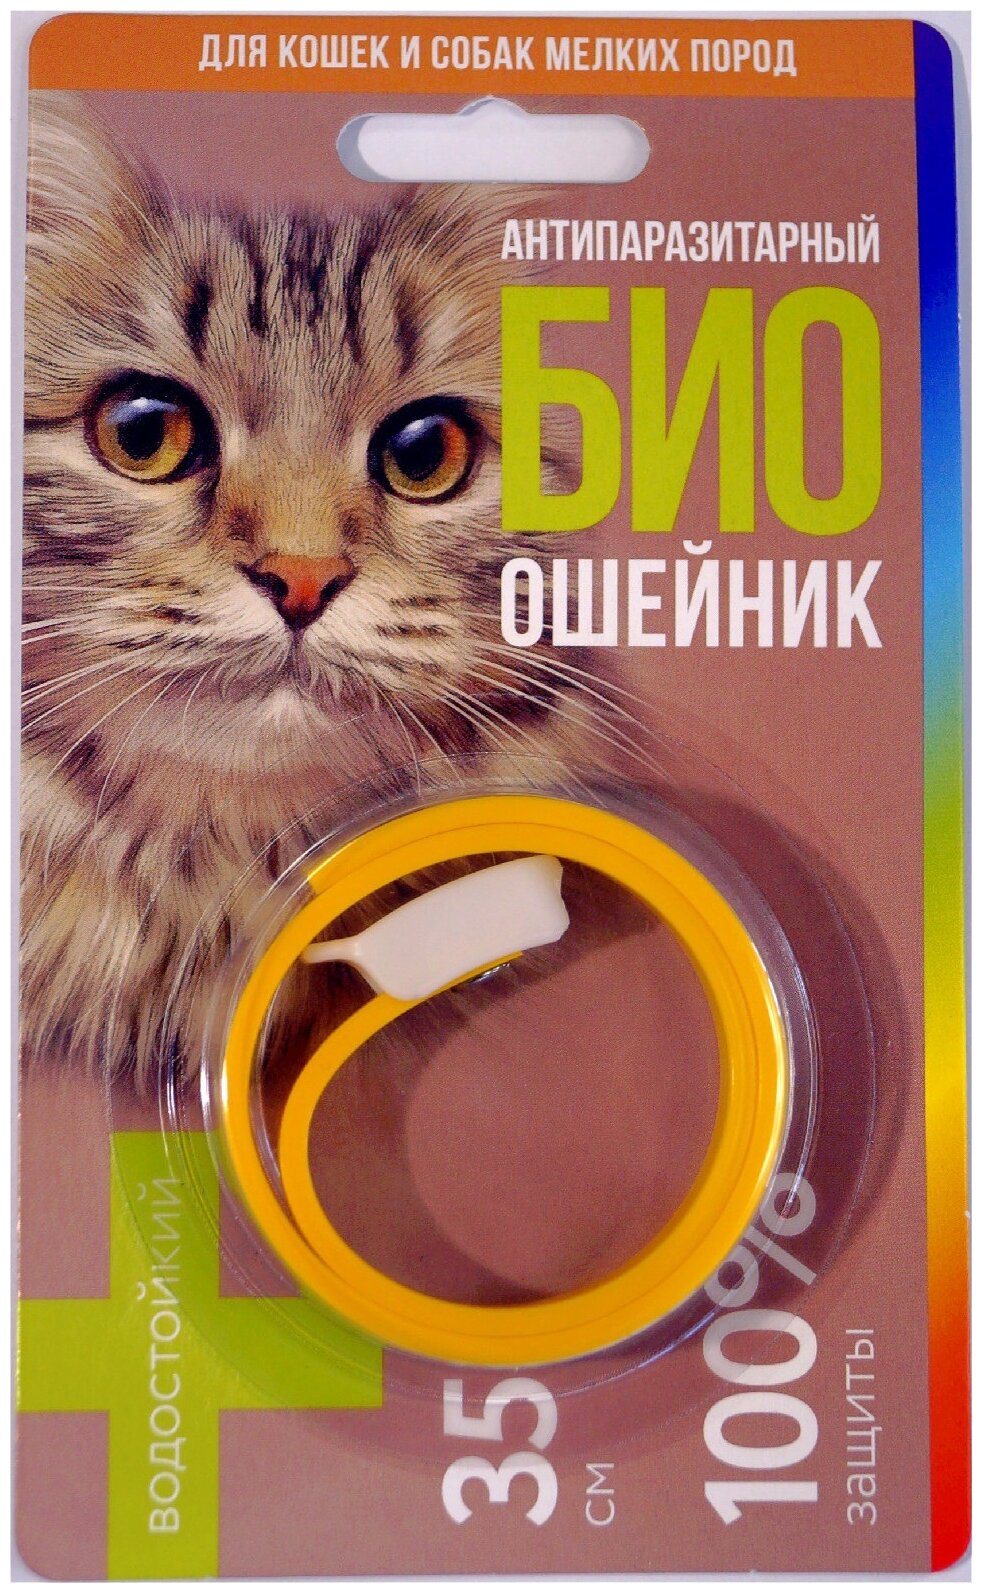 GOOD Cat ошейник от блох и клещей антипаразитарный био для кошек и собак, 35 см, микс 1 шт. в уп., 1 уп.